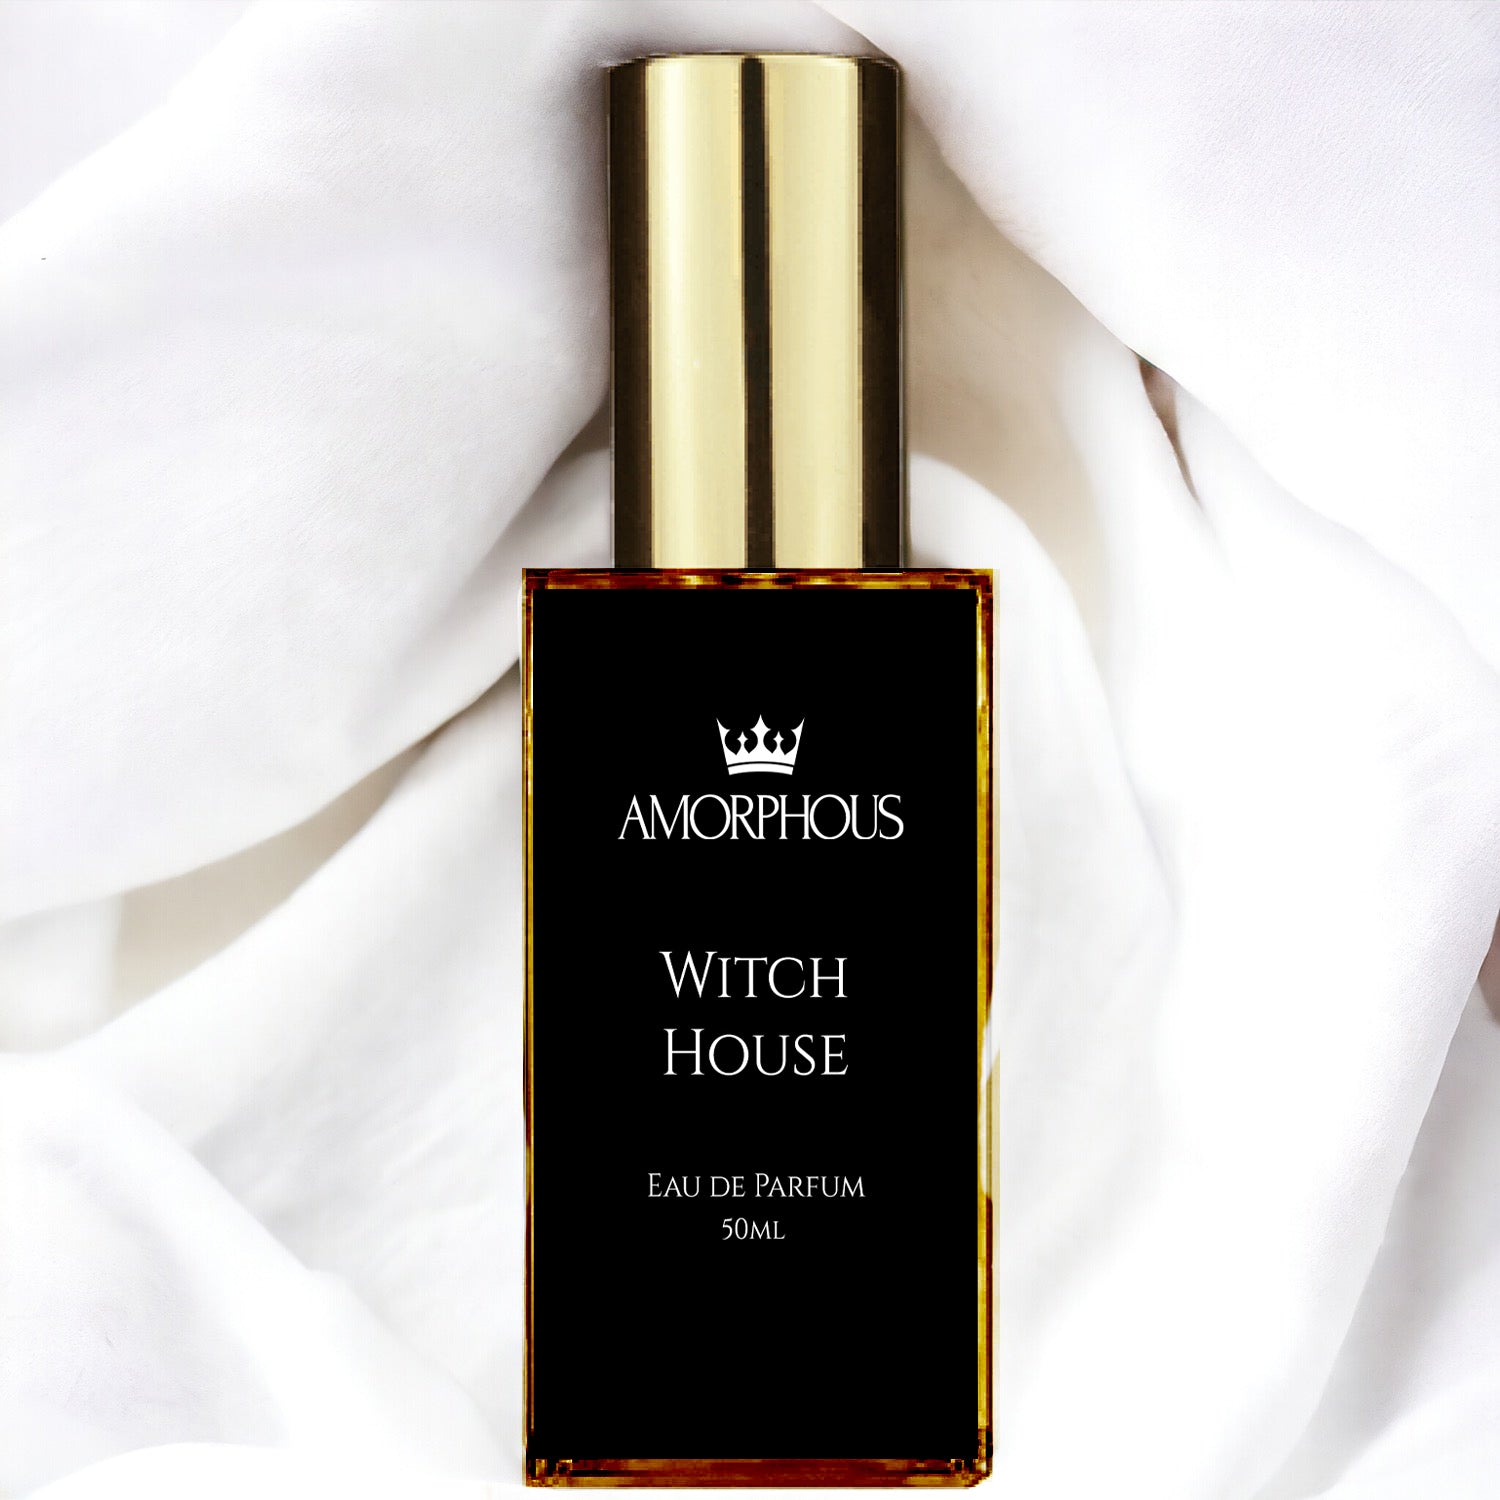 Witch house eau de parfum